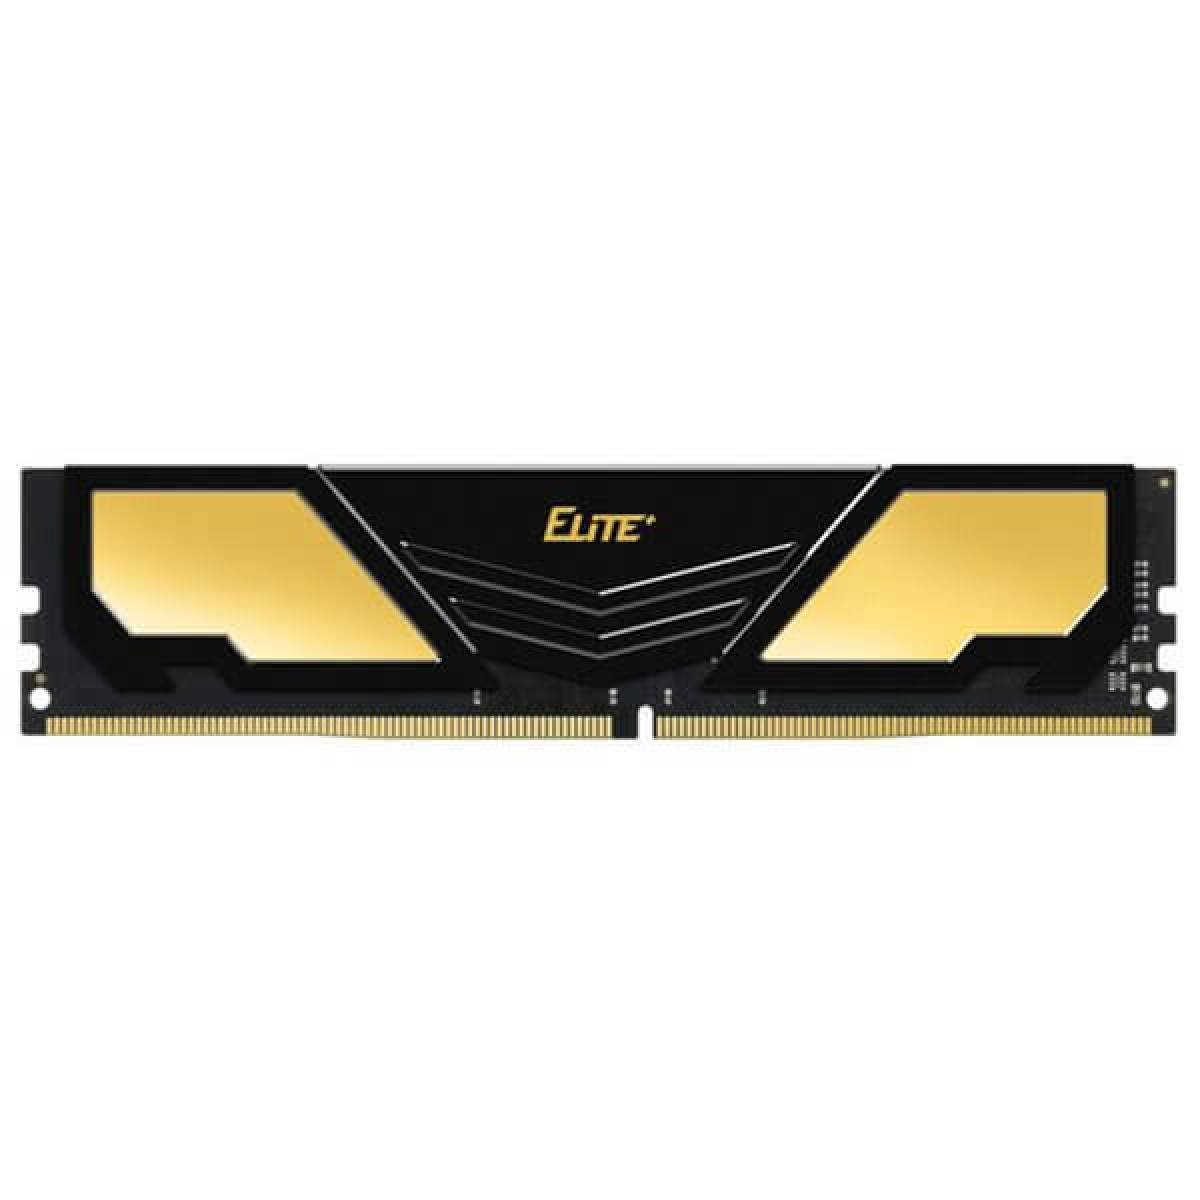 Elite Plus 4G  DDR4 -2666MHZ